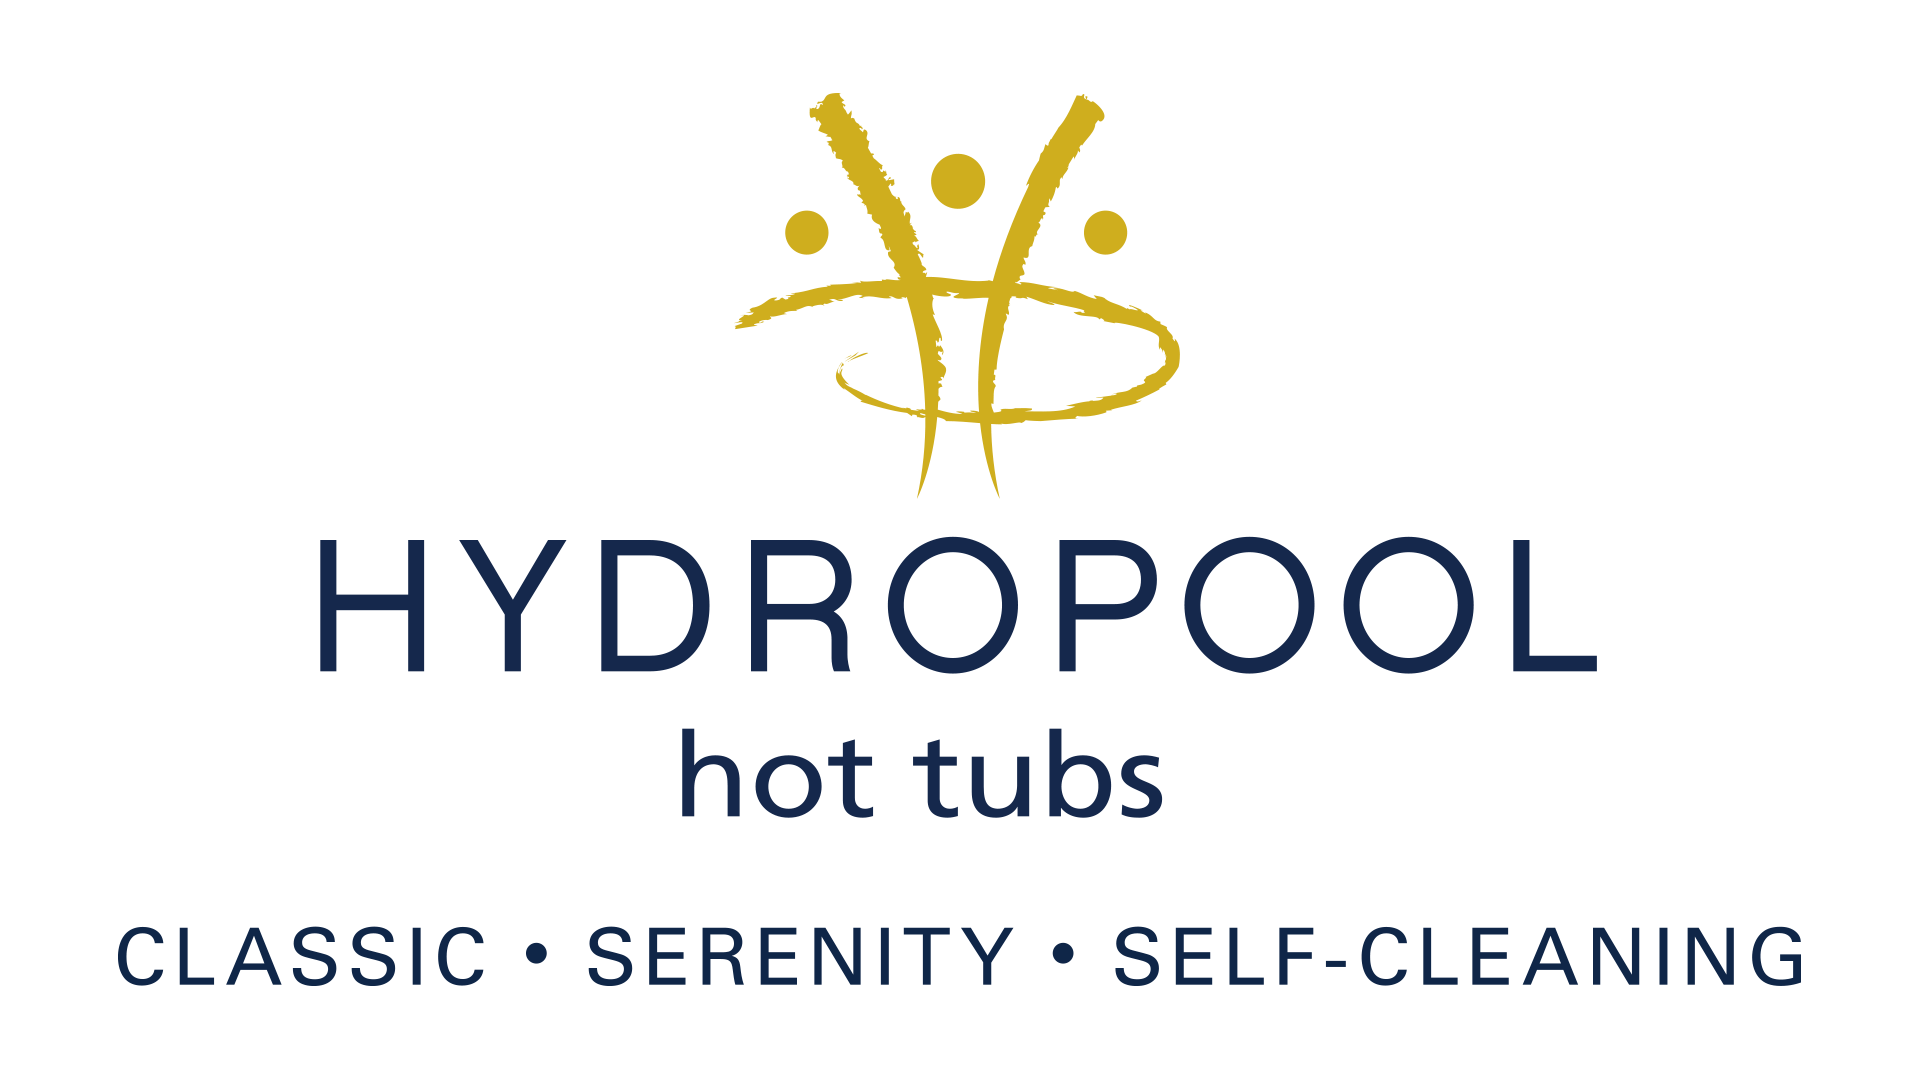 Hydropool